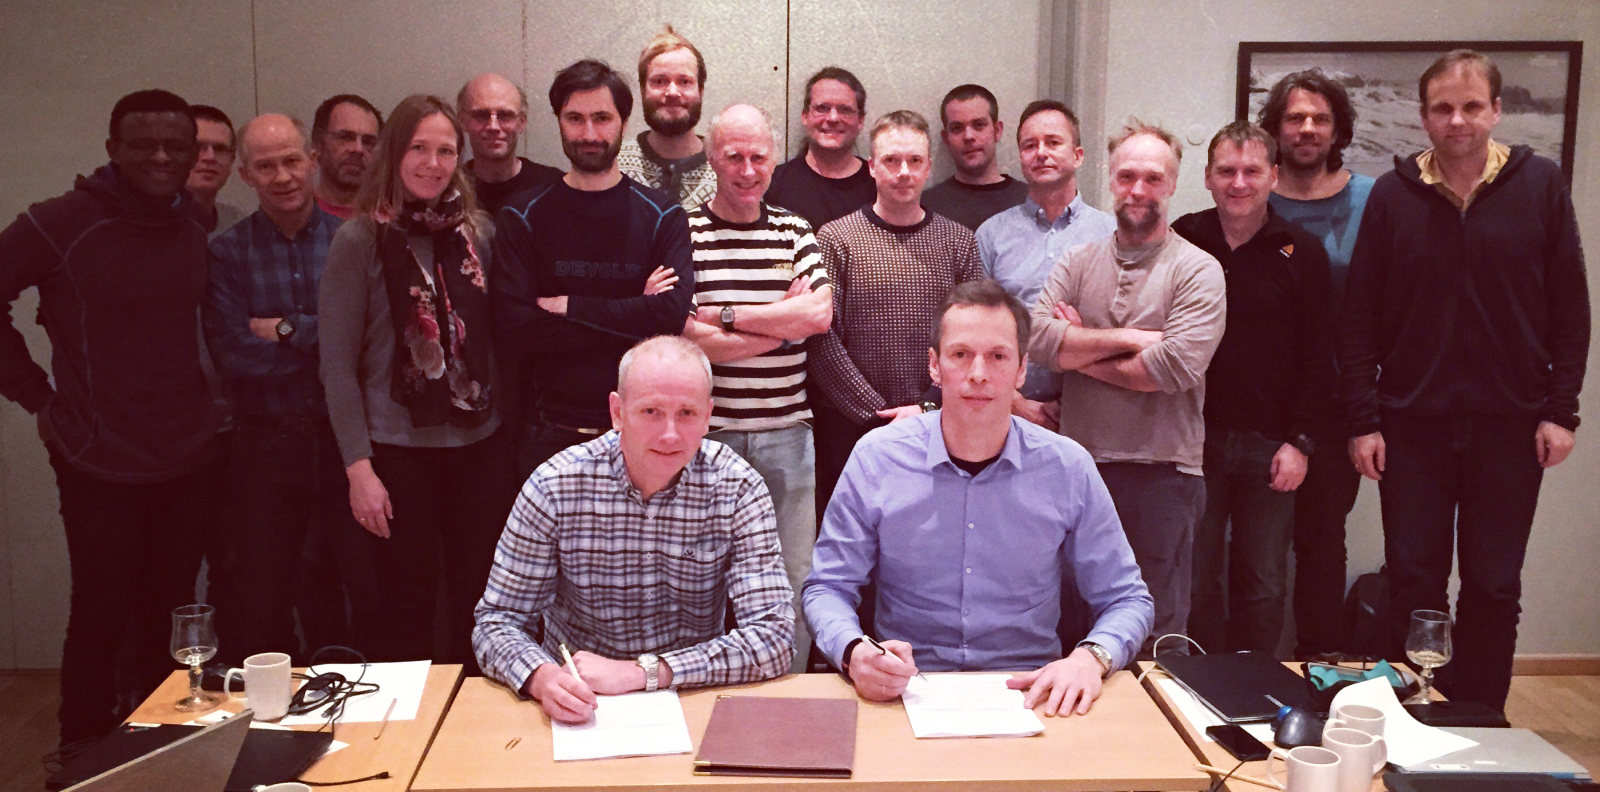 Forskningsdirektør Geir Huse (til høyre) fra Havforskningsinstituttet og ass. direktør André Teigland fra NR signerer den nye rammeavtalen under oppstartsmøte på Finse 22. februar. Foto Erik Olsen, HI.